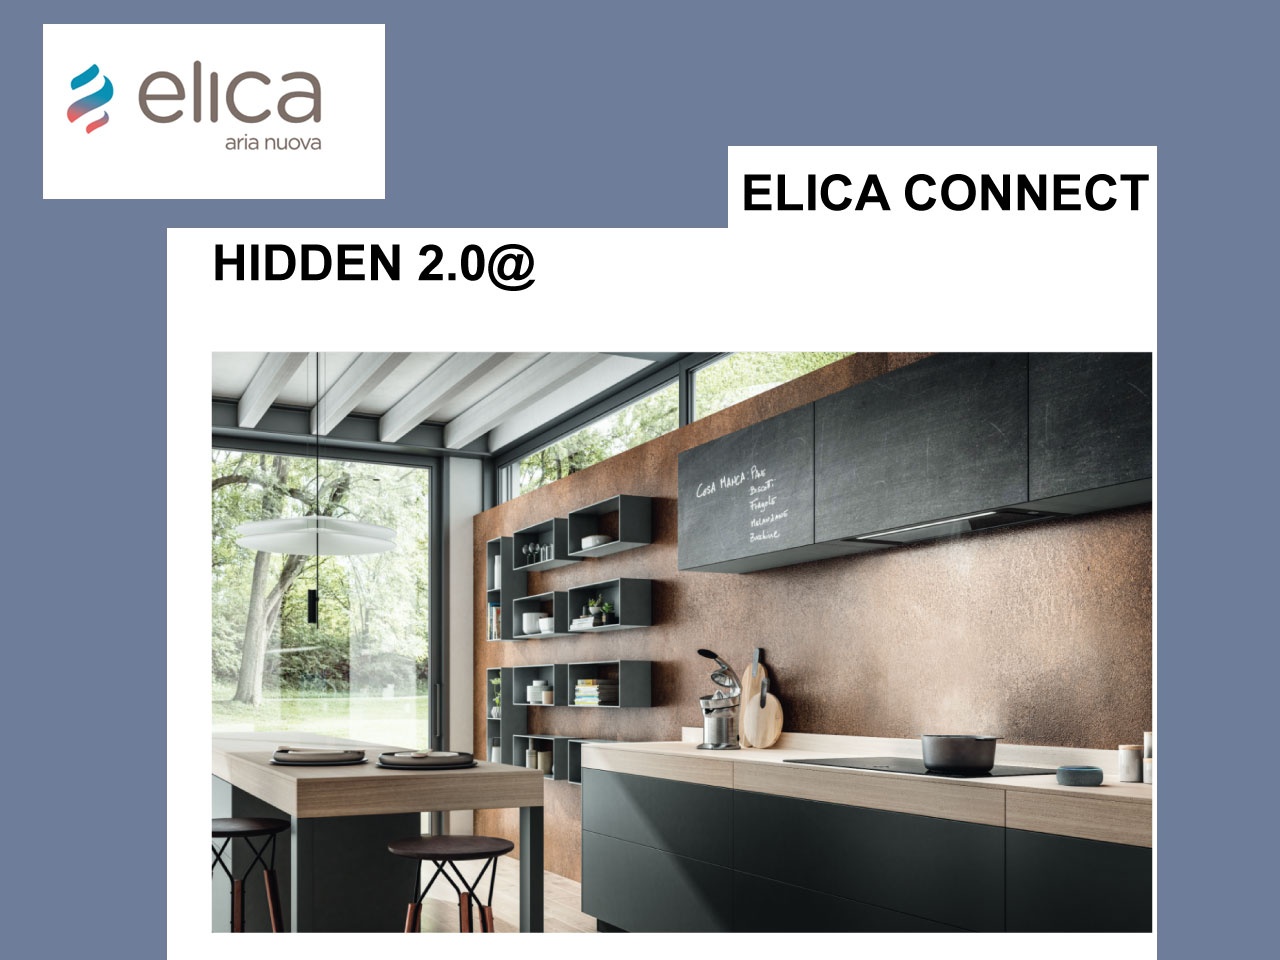 Elica présente Elica Connect, sa gamme de hottes intelligentes, intuitives et innovantes !